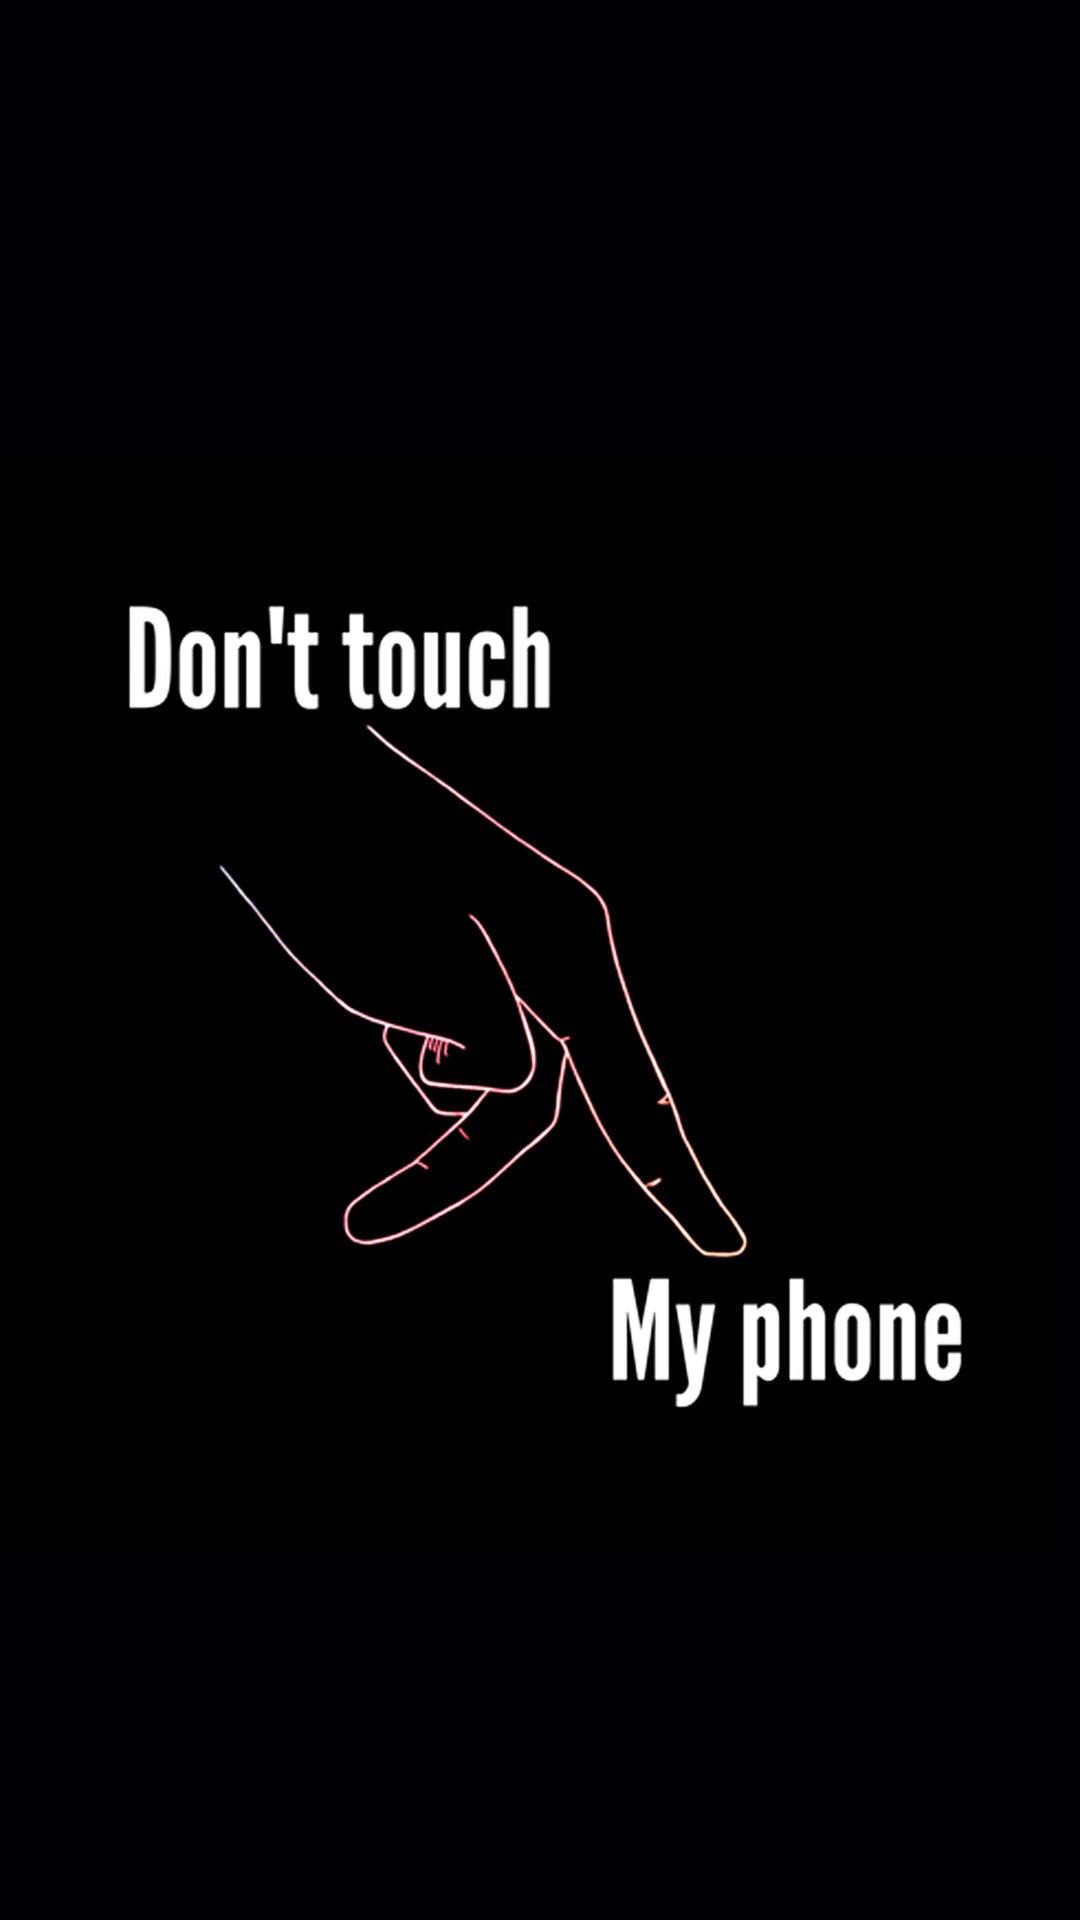 non toccare il mio telefono wallpaper hd,nero,font,testo,grafica,fotografia